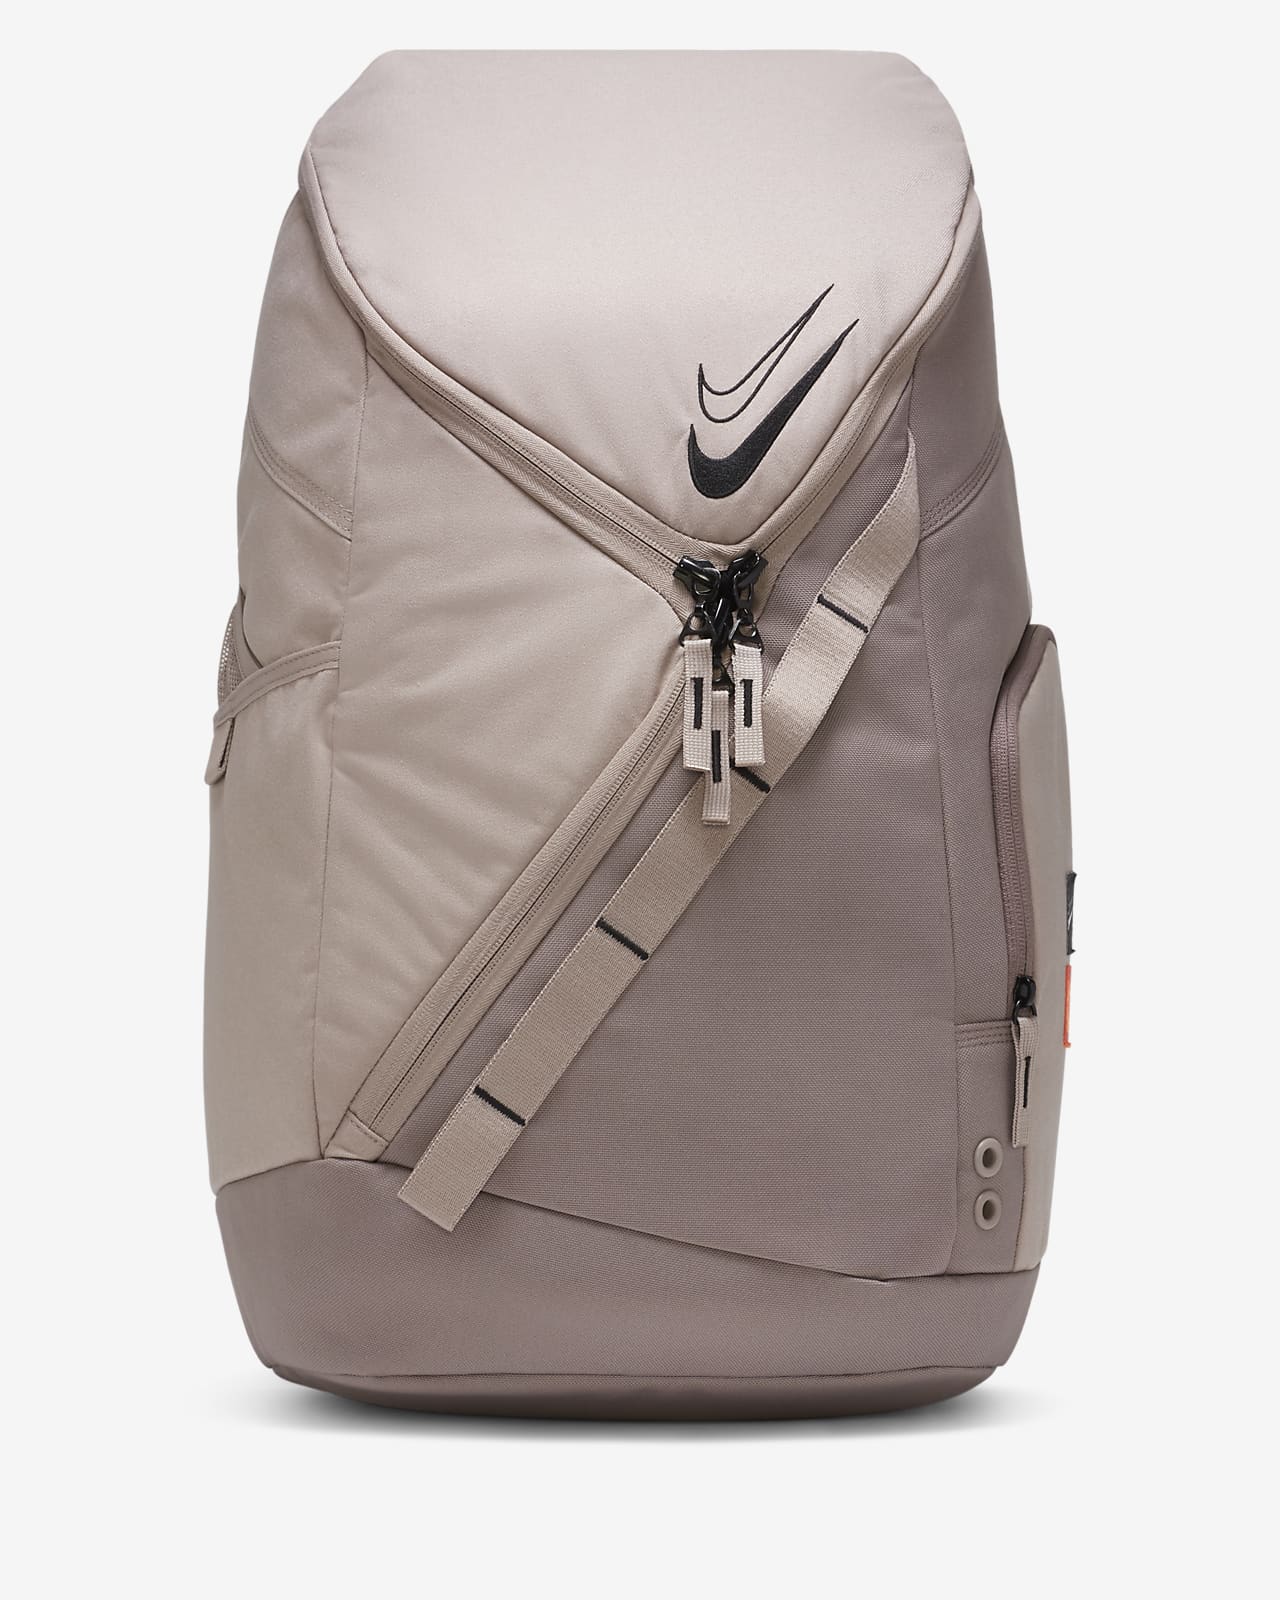 lv inspire backpack bags for women